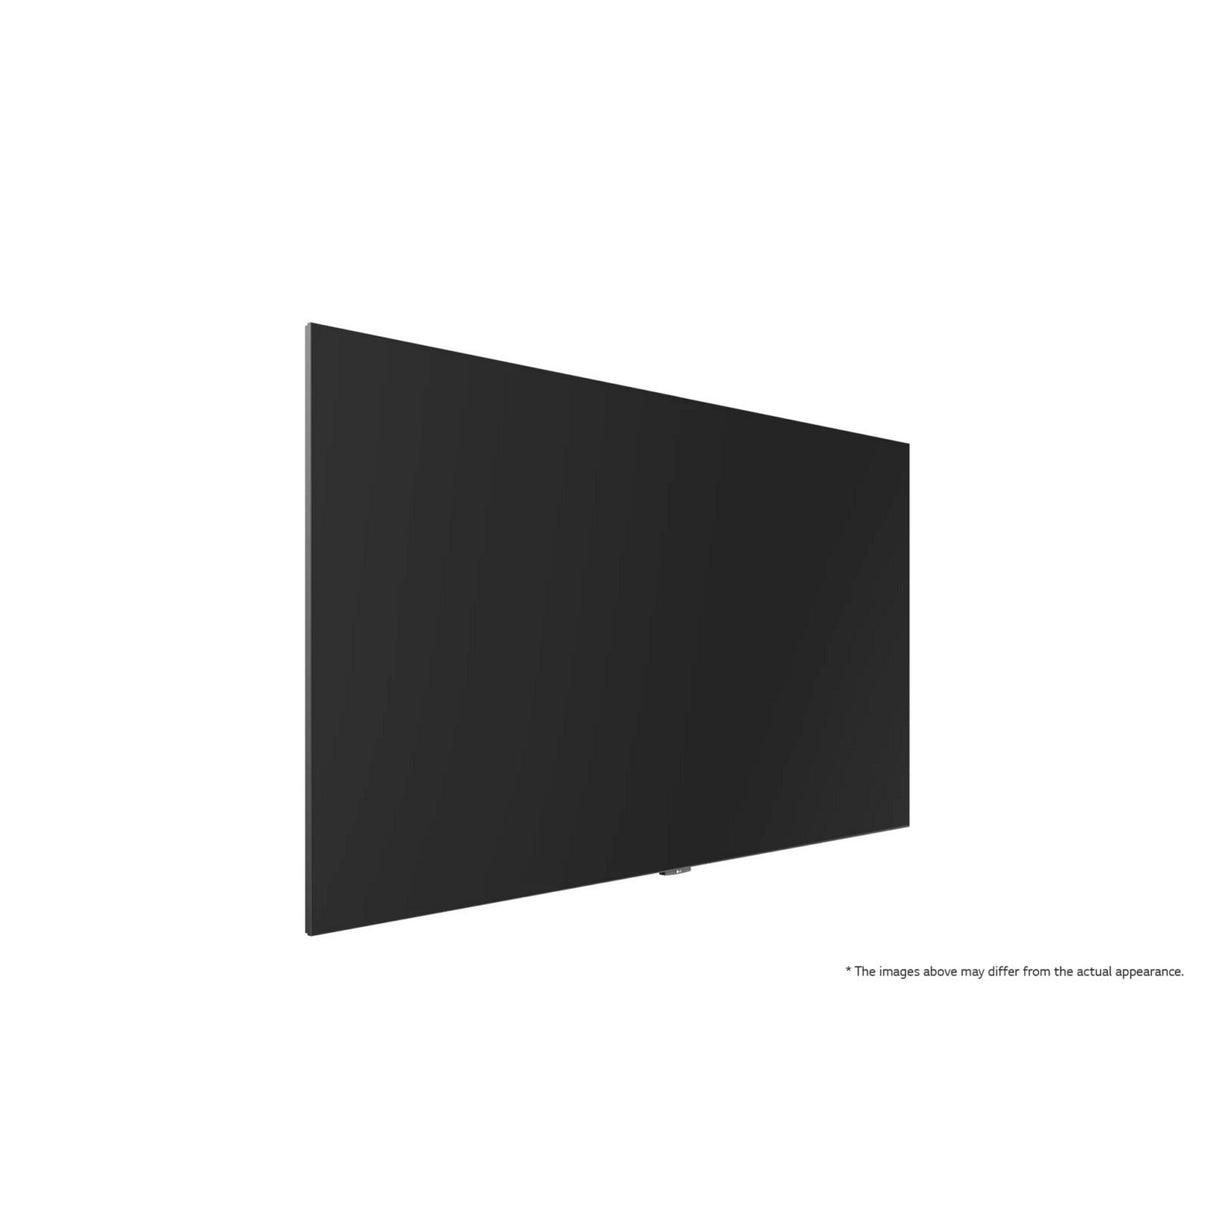 LG LAEB015 136-Inch All-in-One Essential Full HD DV LED Screen